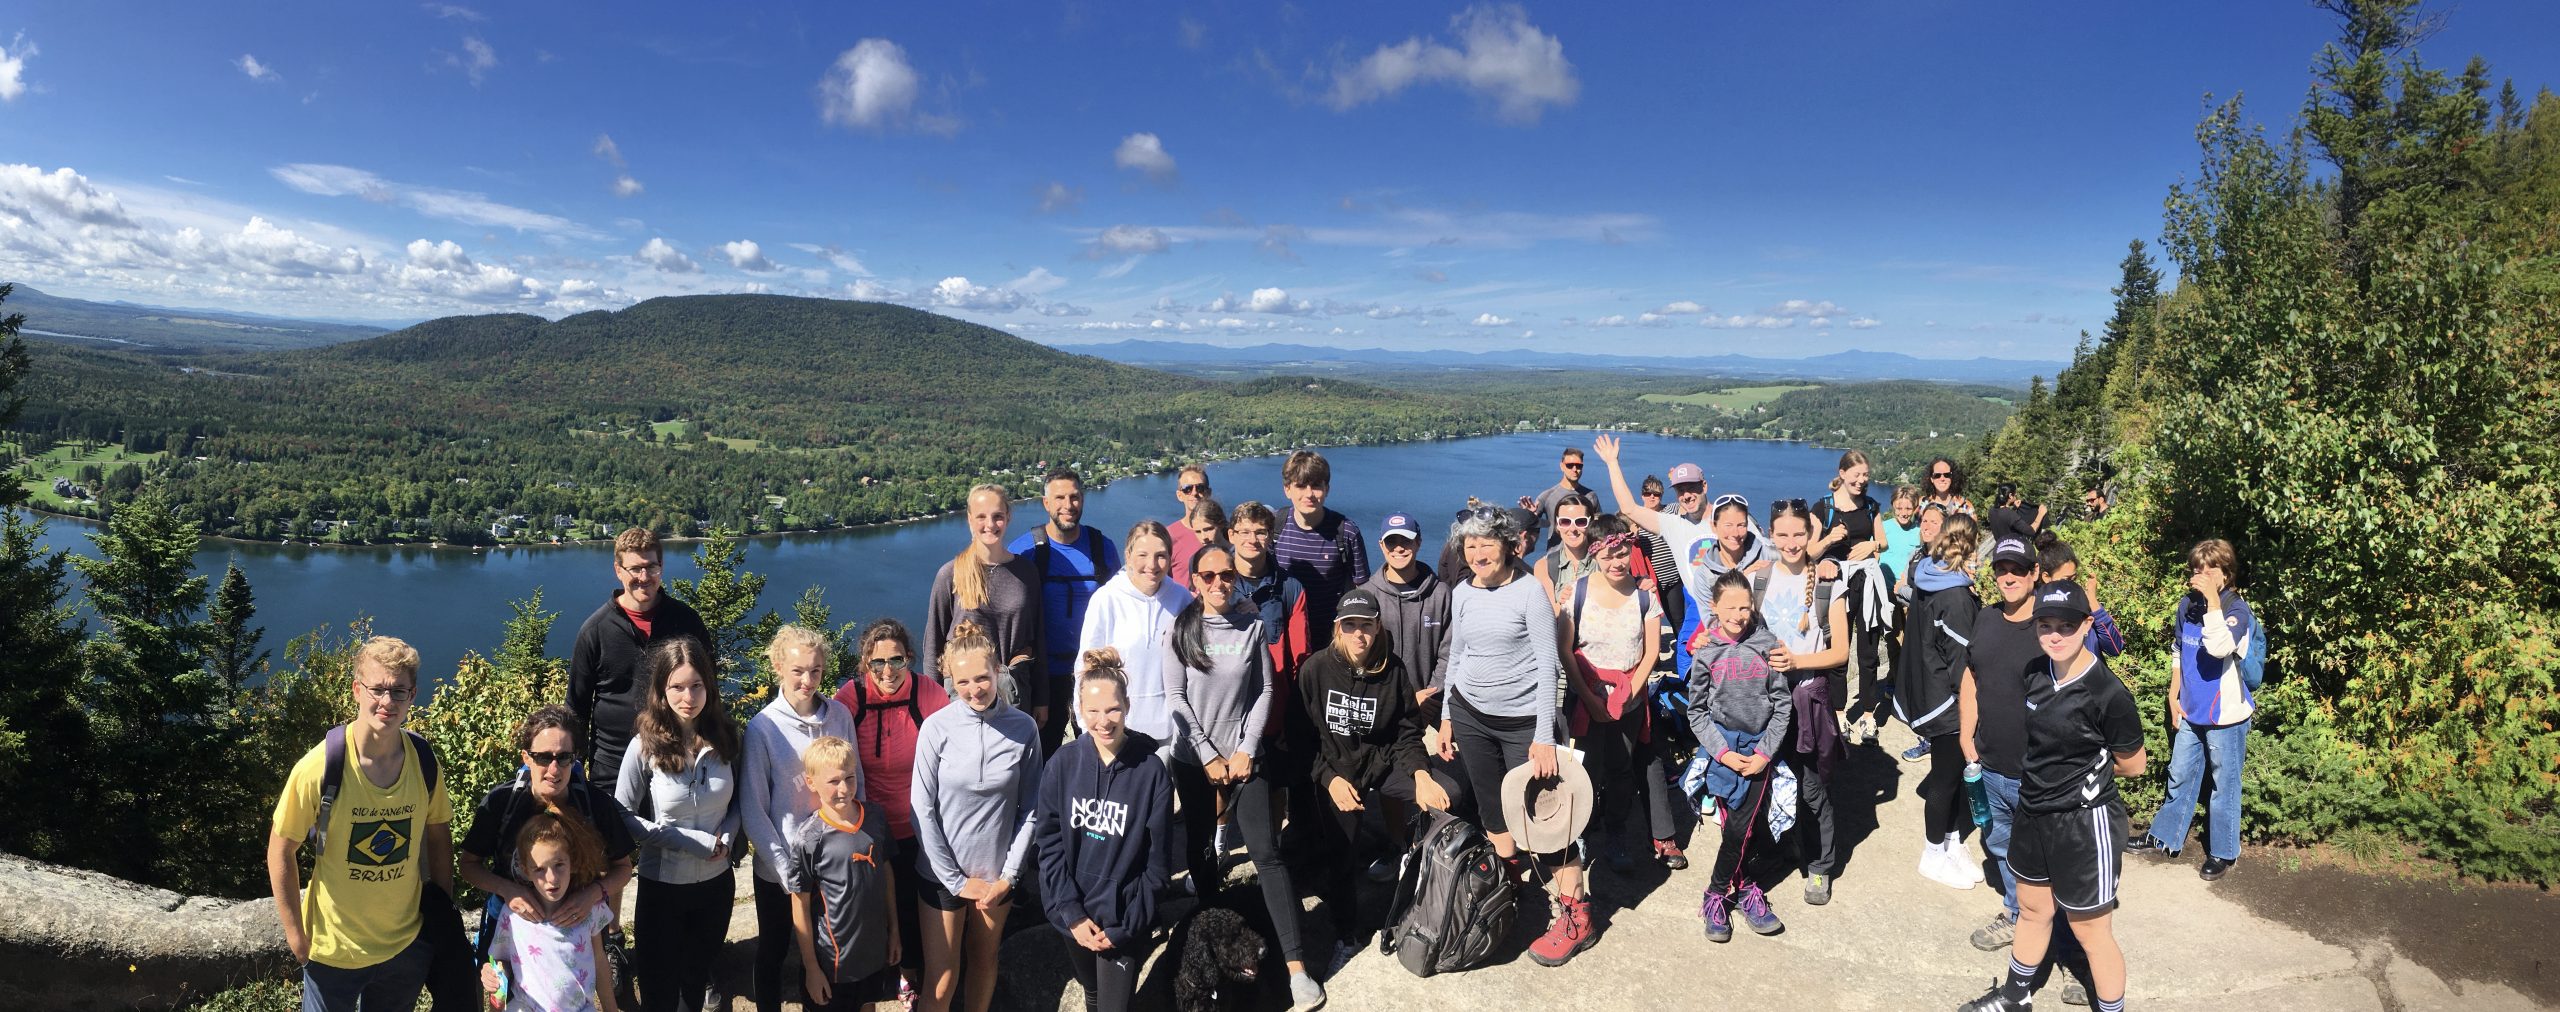 Gruppe von Austauschschülern und Schülerinnen mit Aussicht auf das Meer in Quebec, Kanada